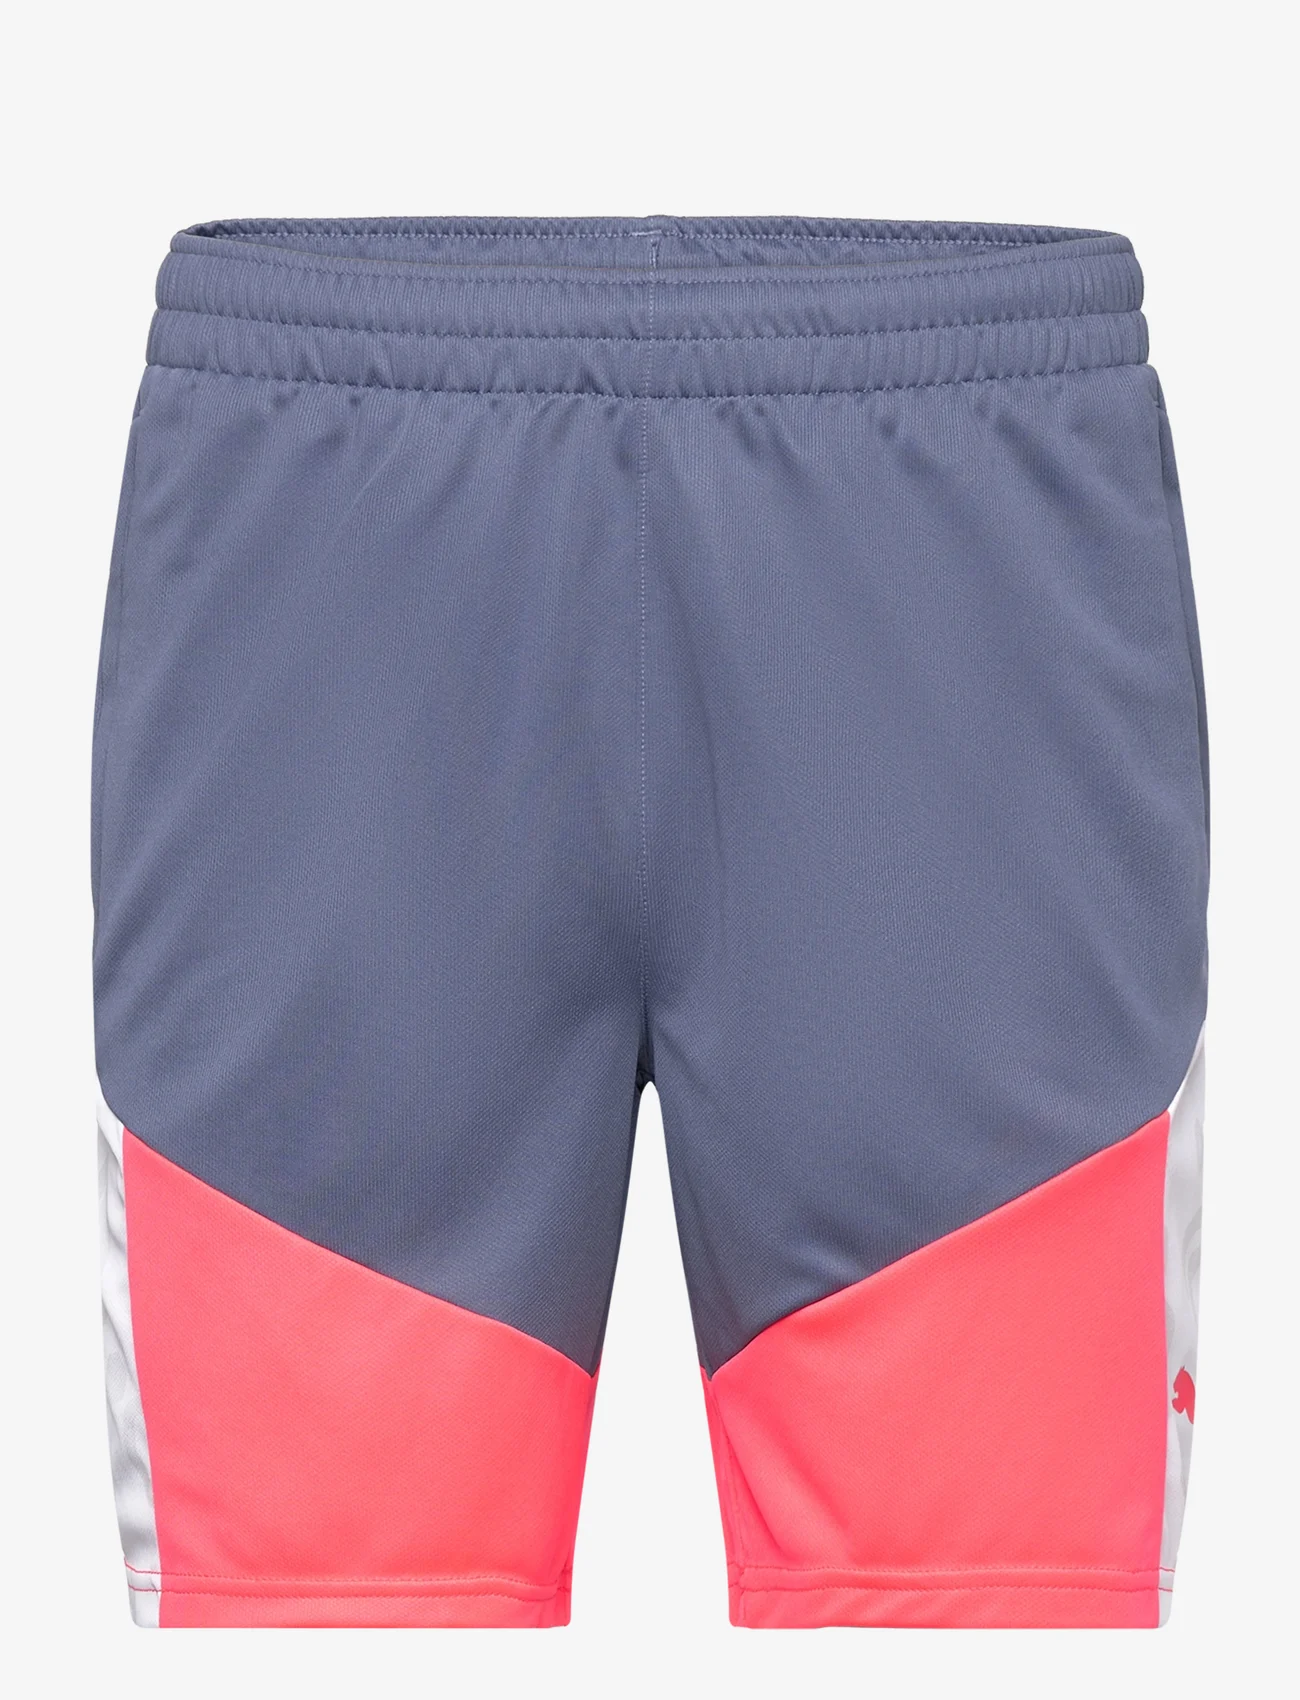 PUMA - individualCUP Shorts - training shorts - puma white-inky blue - 0